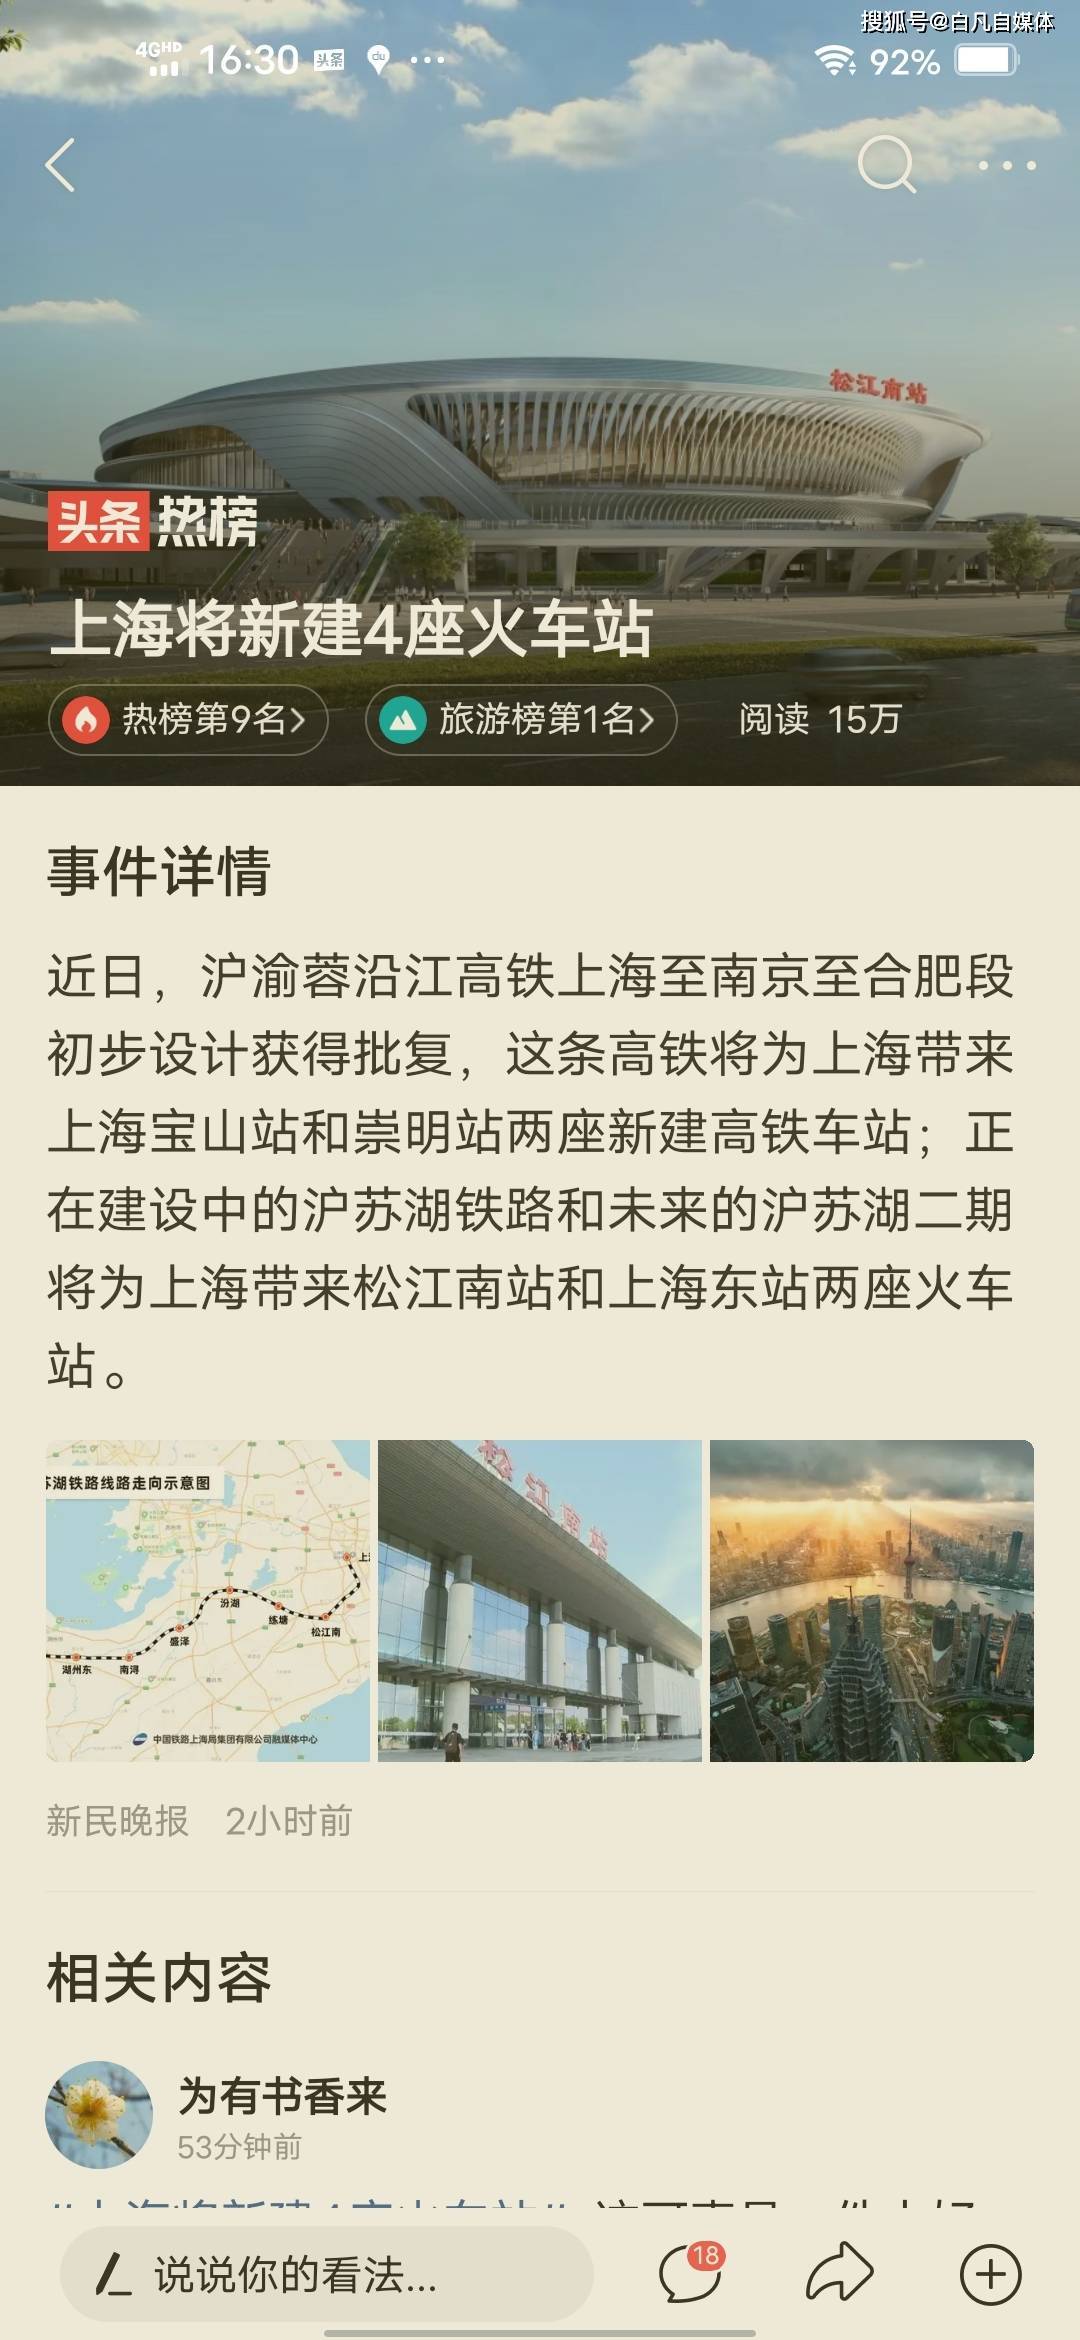 上海将新建4座火车站